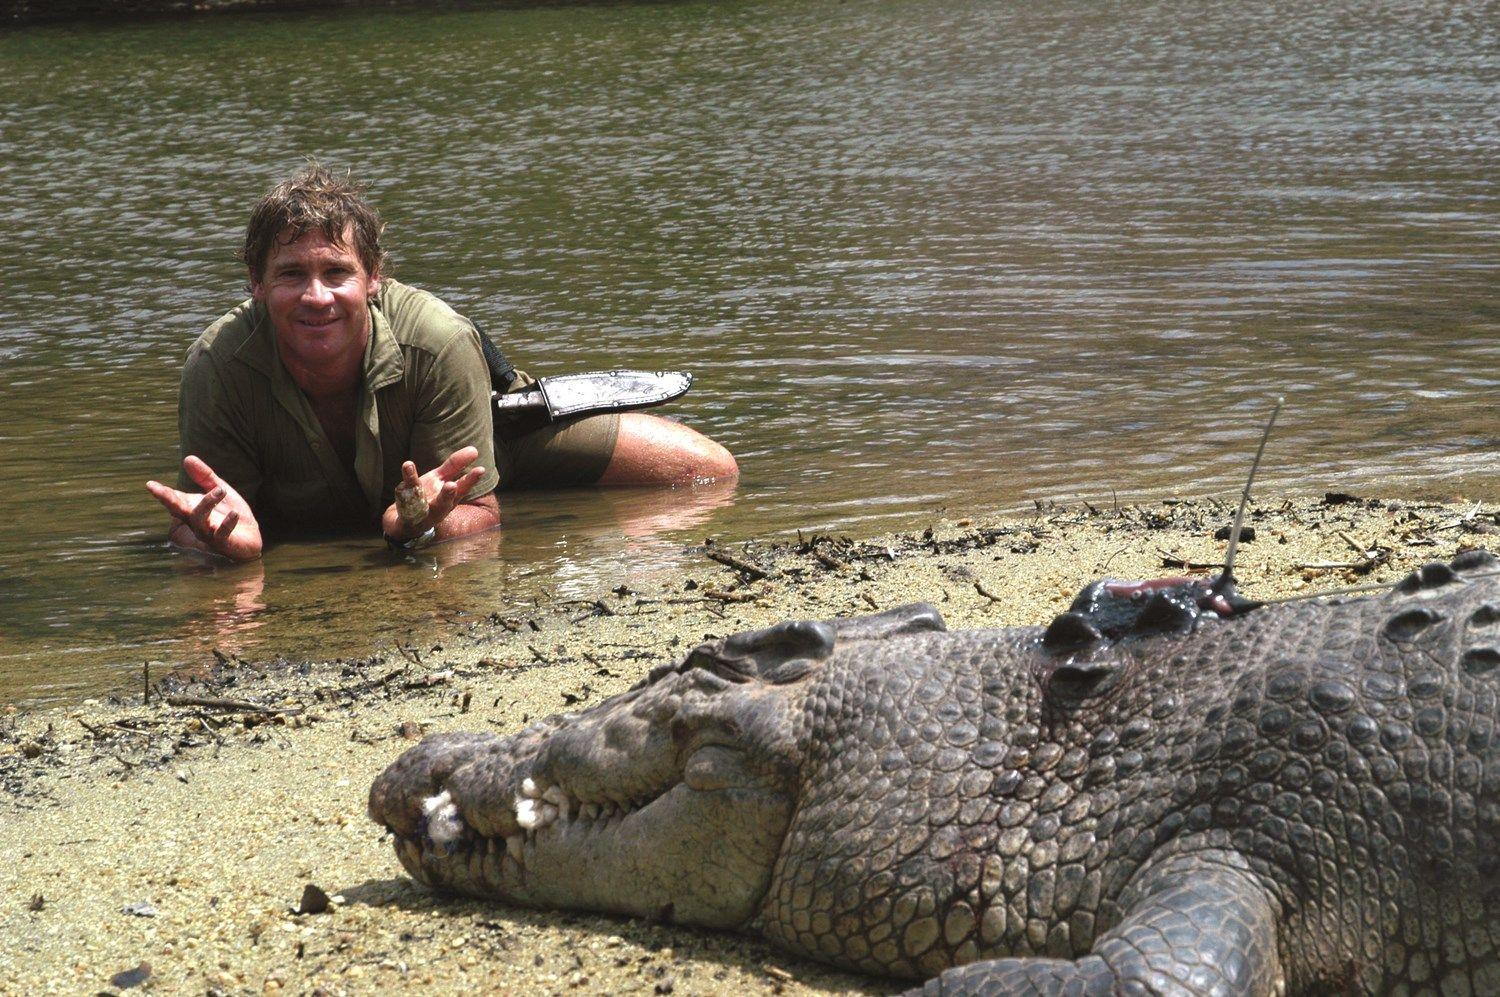 Steve Irwin Crocodile Hunter Logo - โรเบิร์ต เออร์วิน : นักอนุรักษ์กับภาพถ่ายที่ทำให้คุณอยากอนุรักษ์ ...